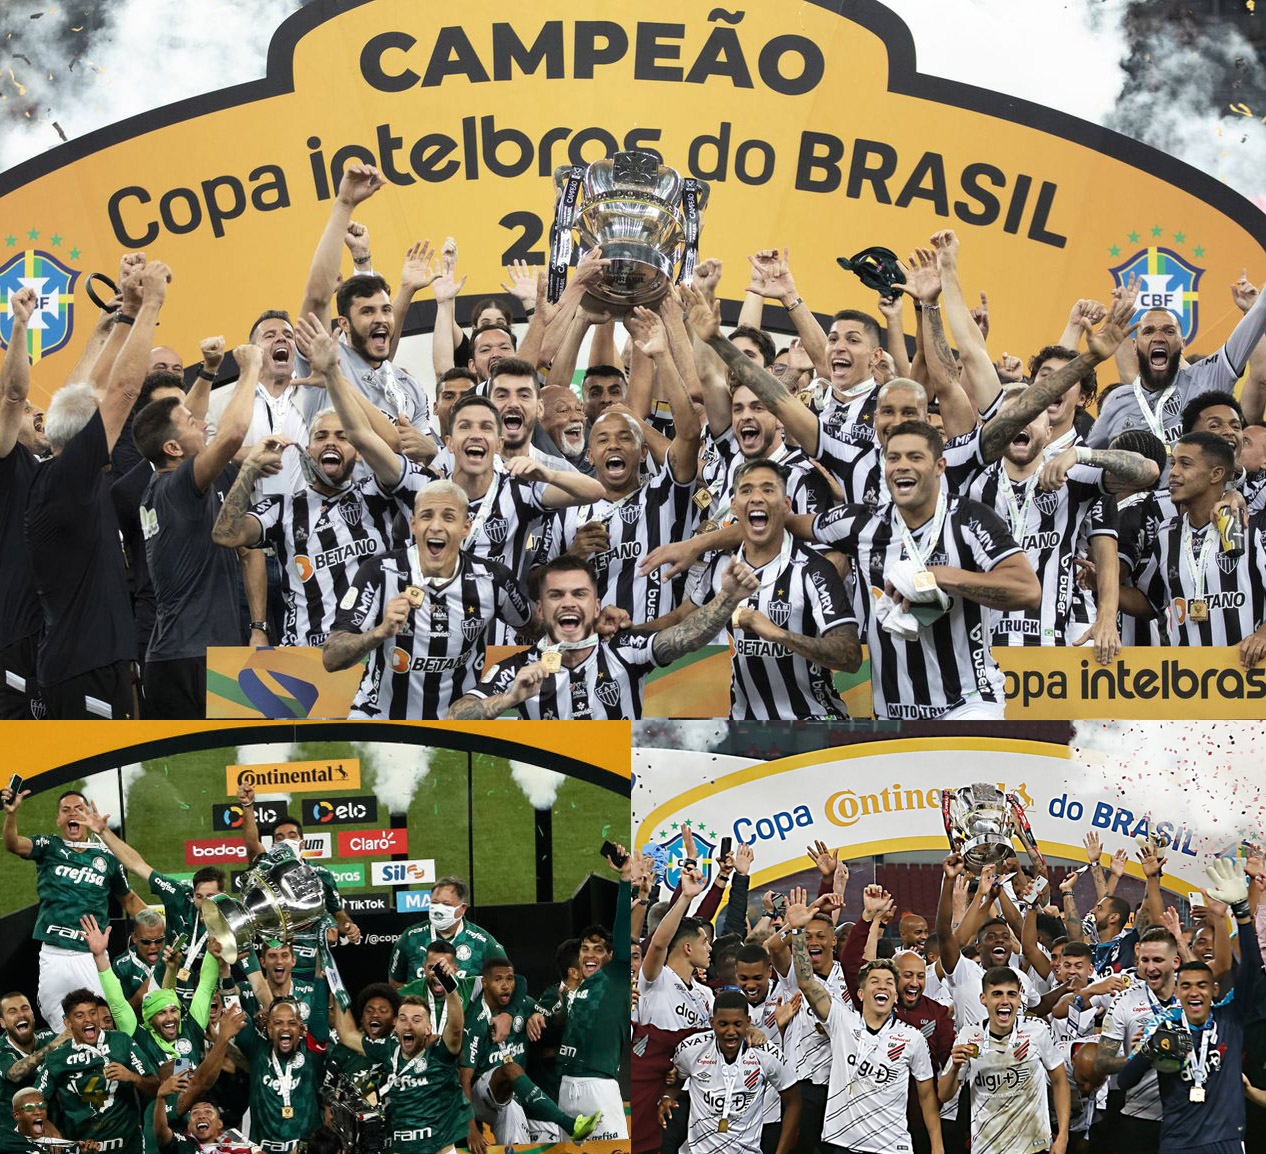 Copa do Brasil on X: Três jogos, três vencedores. Os resultados